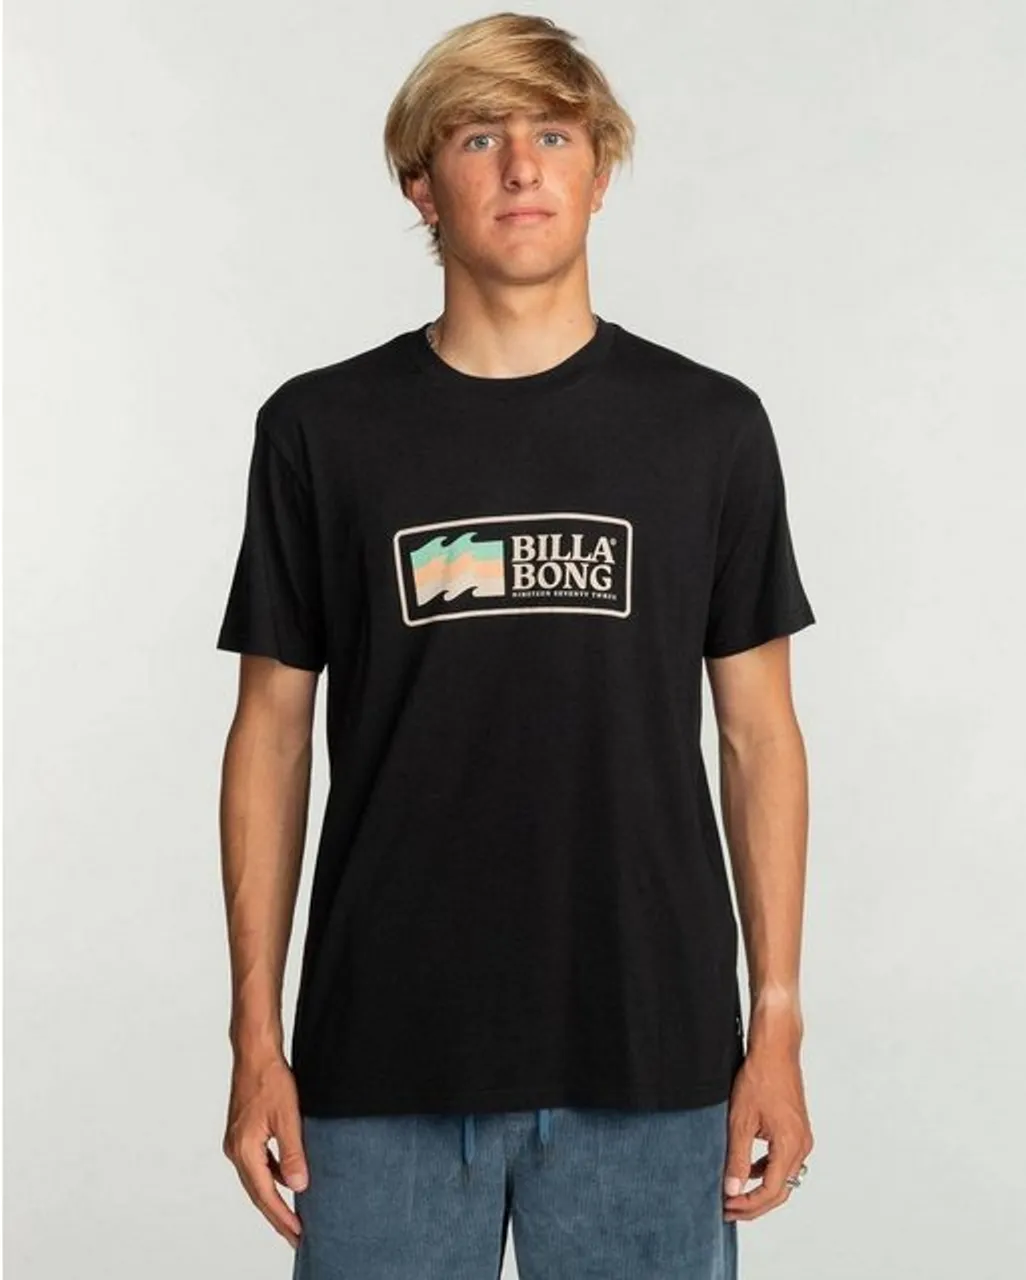 Billabong T-Shirt Swell - T-Shirt für Männer